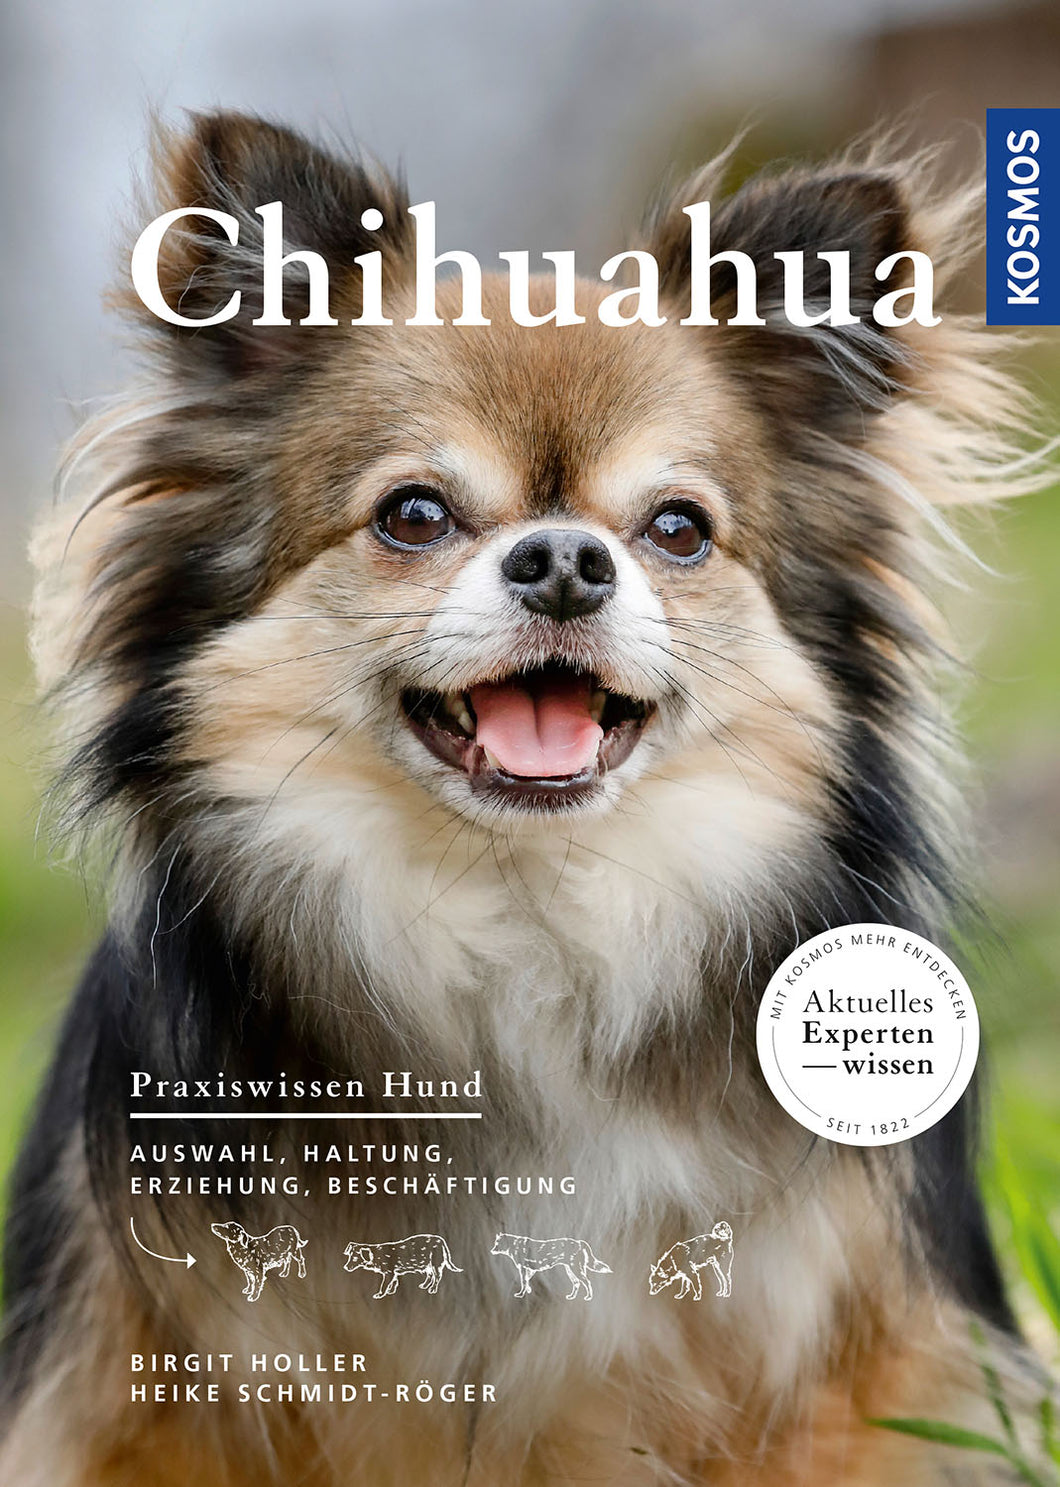 Chihuahua/Holler Schmidt-Röger